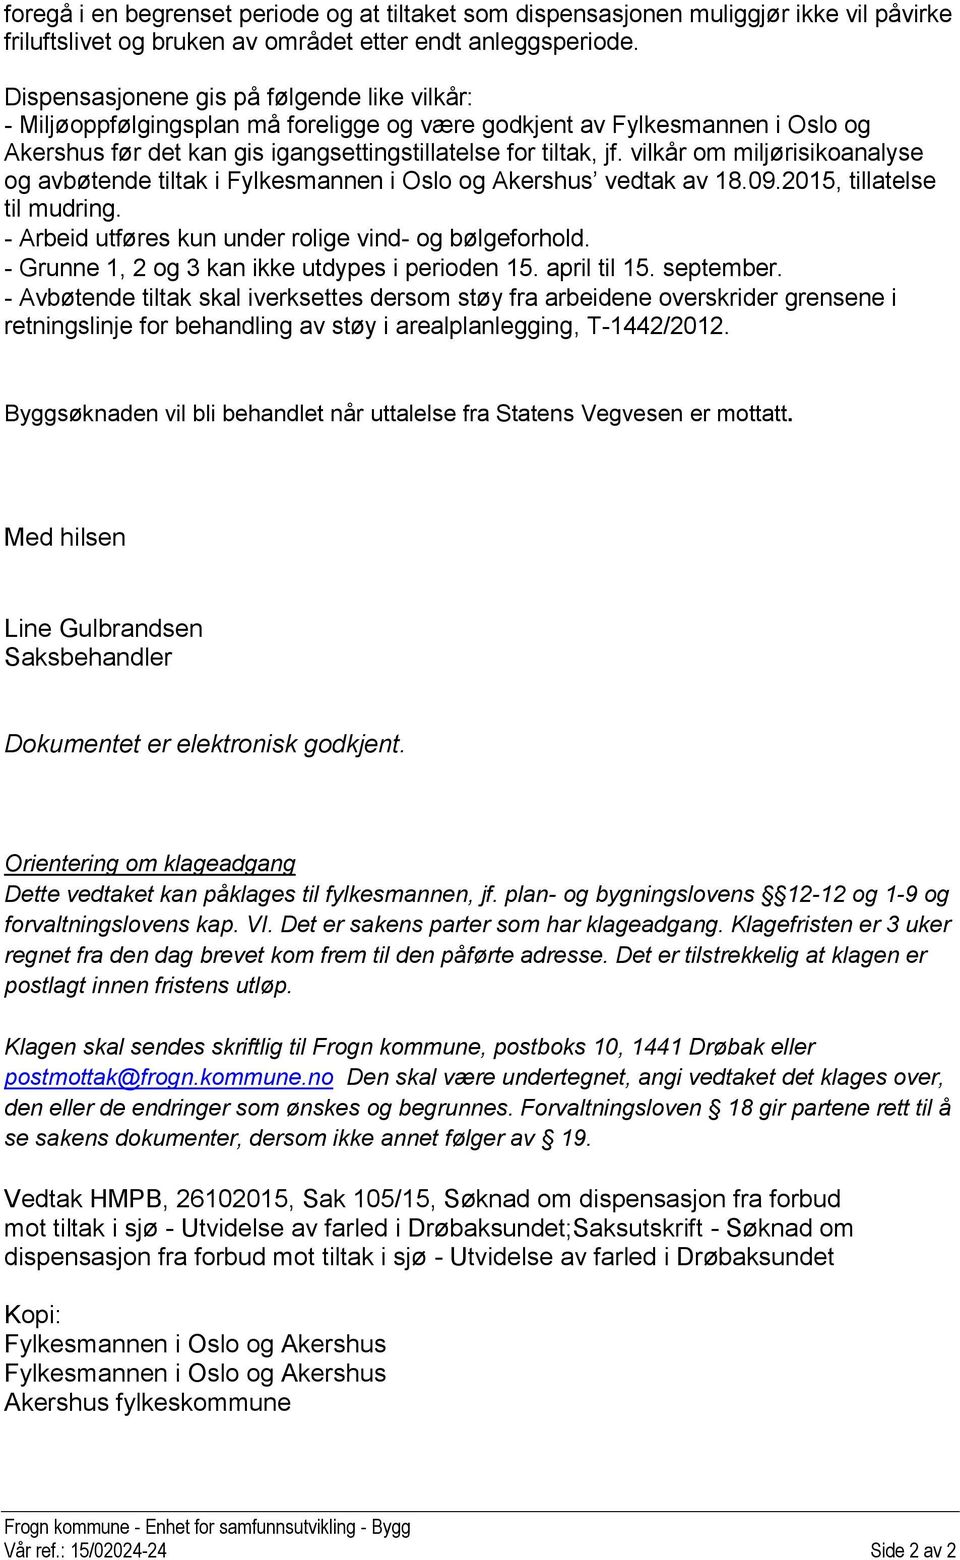 vilkår om miljørisikoanalyse og avbøtende tiltak i Fylkesmannen i Oslo og Akershus vedtak av 18.09.2015, tillatelse til mudring. - Arbeid utføres kun under rolige vind- og bølgeforhold.